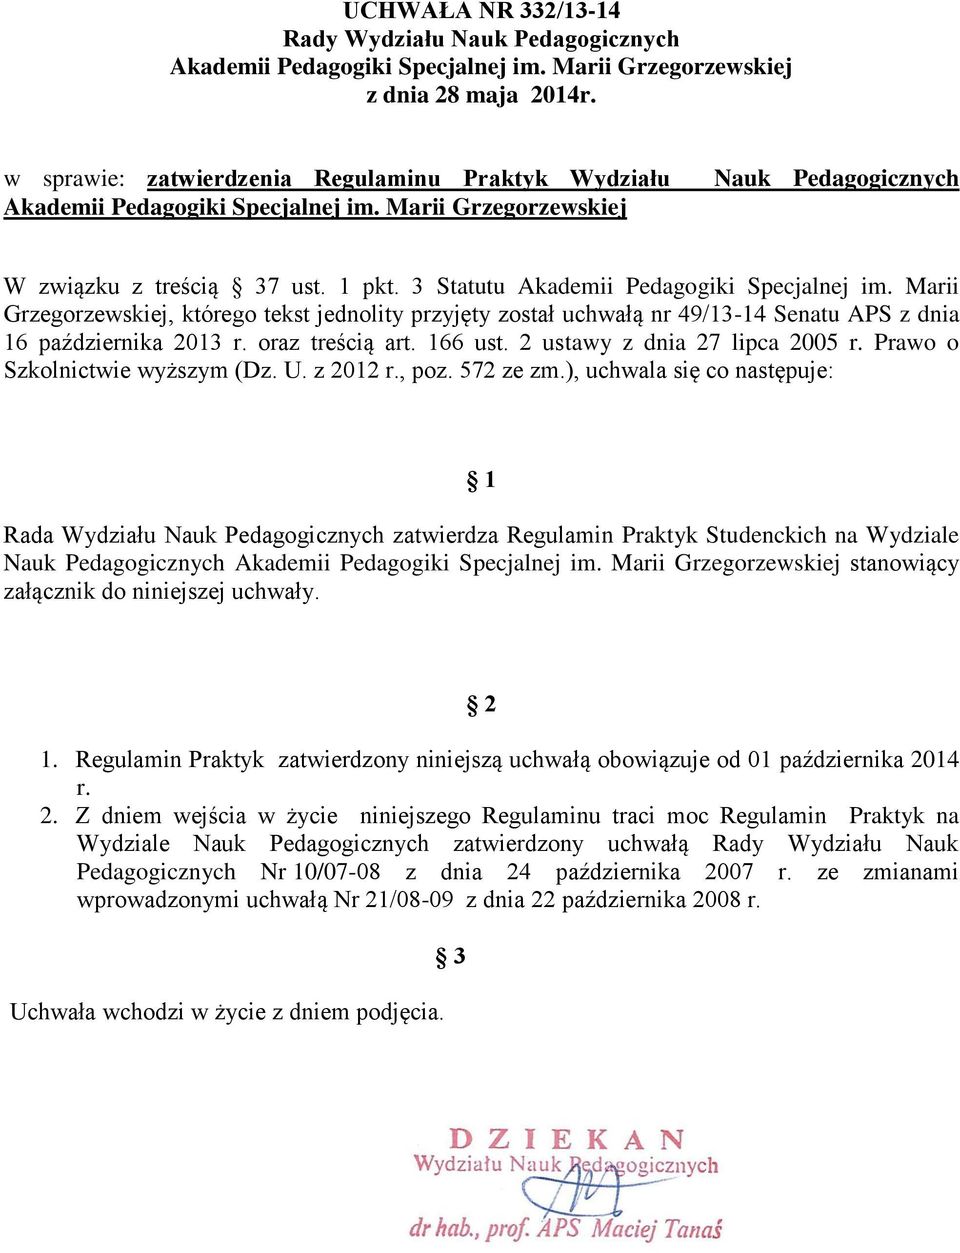 3 Statutu Akademii Pedagogiki Specjalnej im. Marii Grzegorzewskiej, którego tekst jednolity przyjęty został uchwałą nr 49/13-14 Senatu APS z dnia 16 października 2013 r. oraz treścią art. 166 ust.